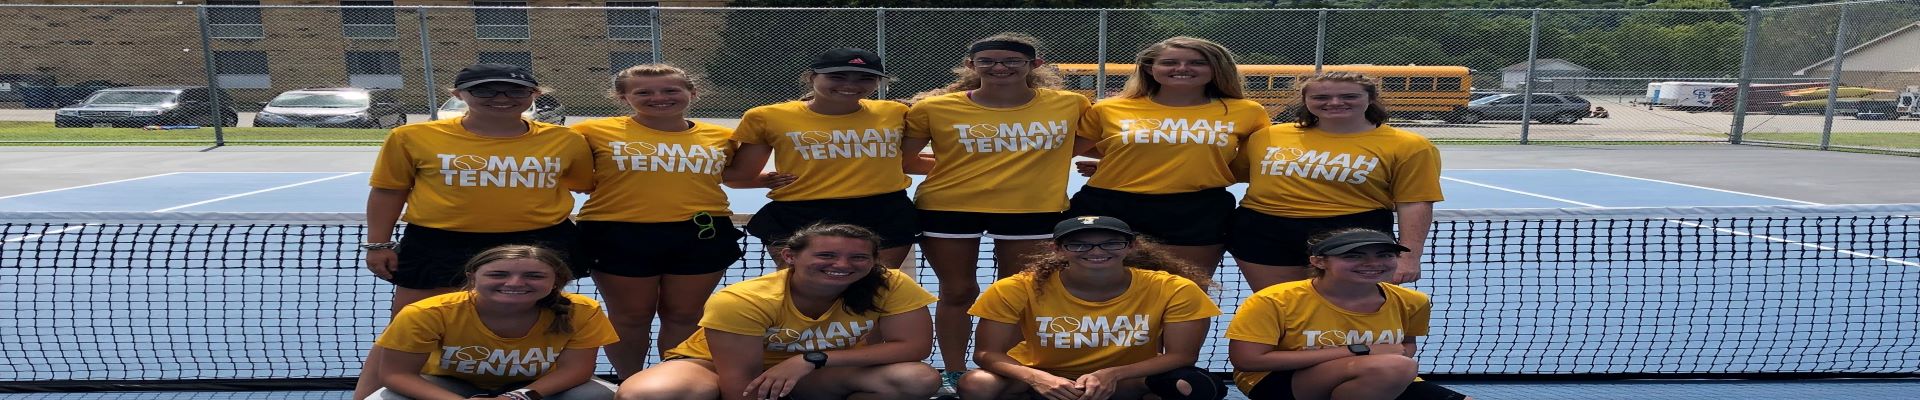 Tomah Tennis Girls 2019_cropped_1920x400